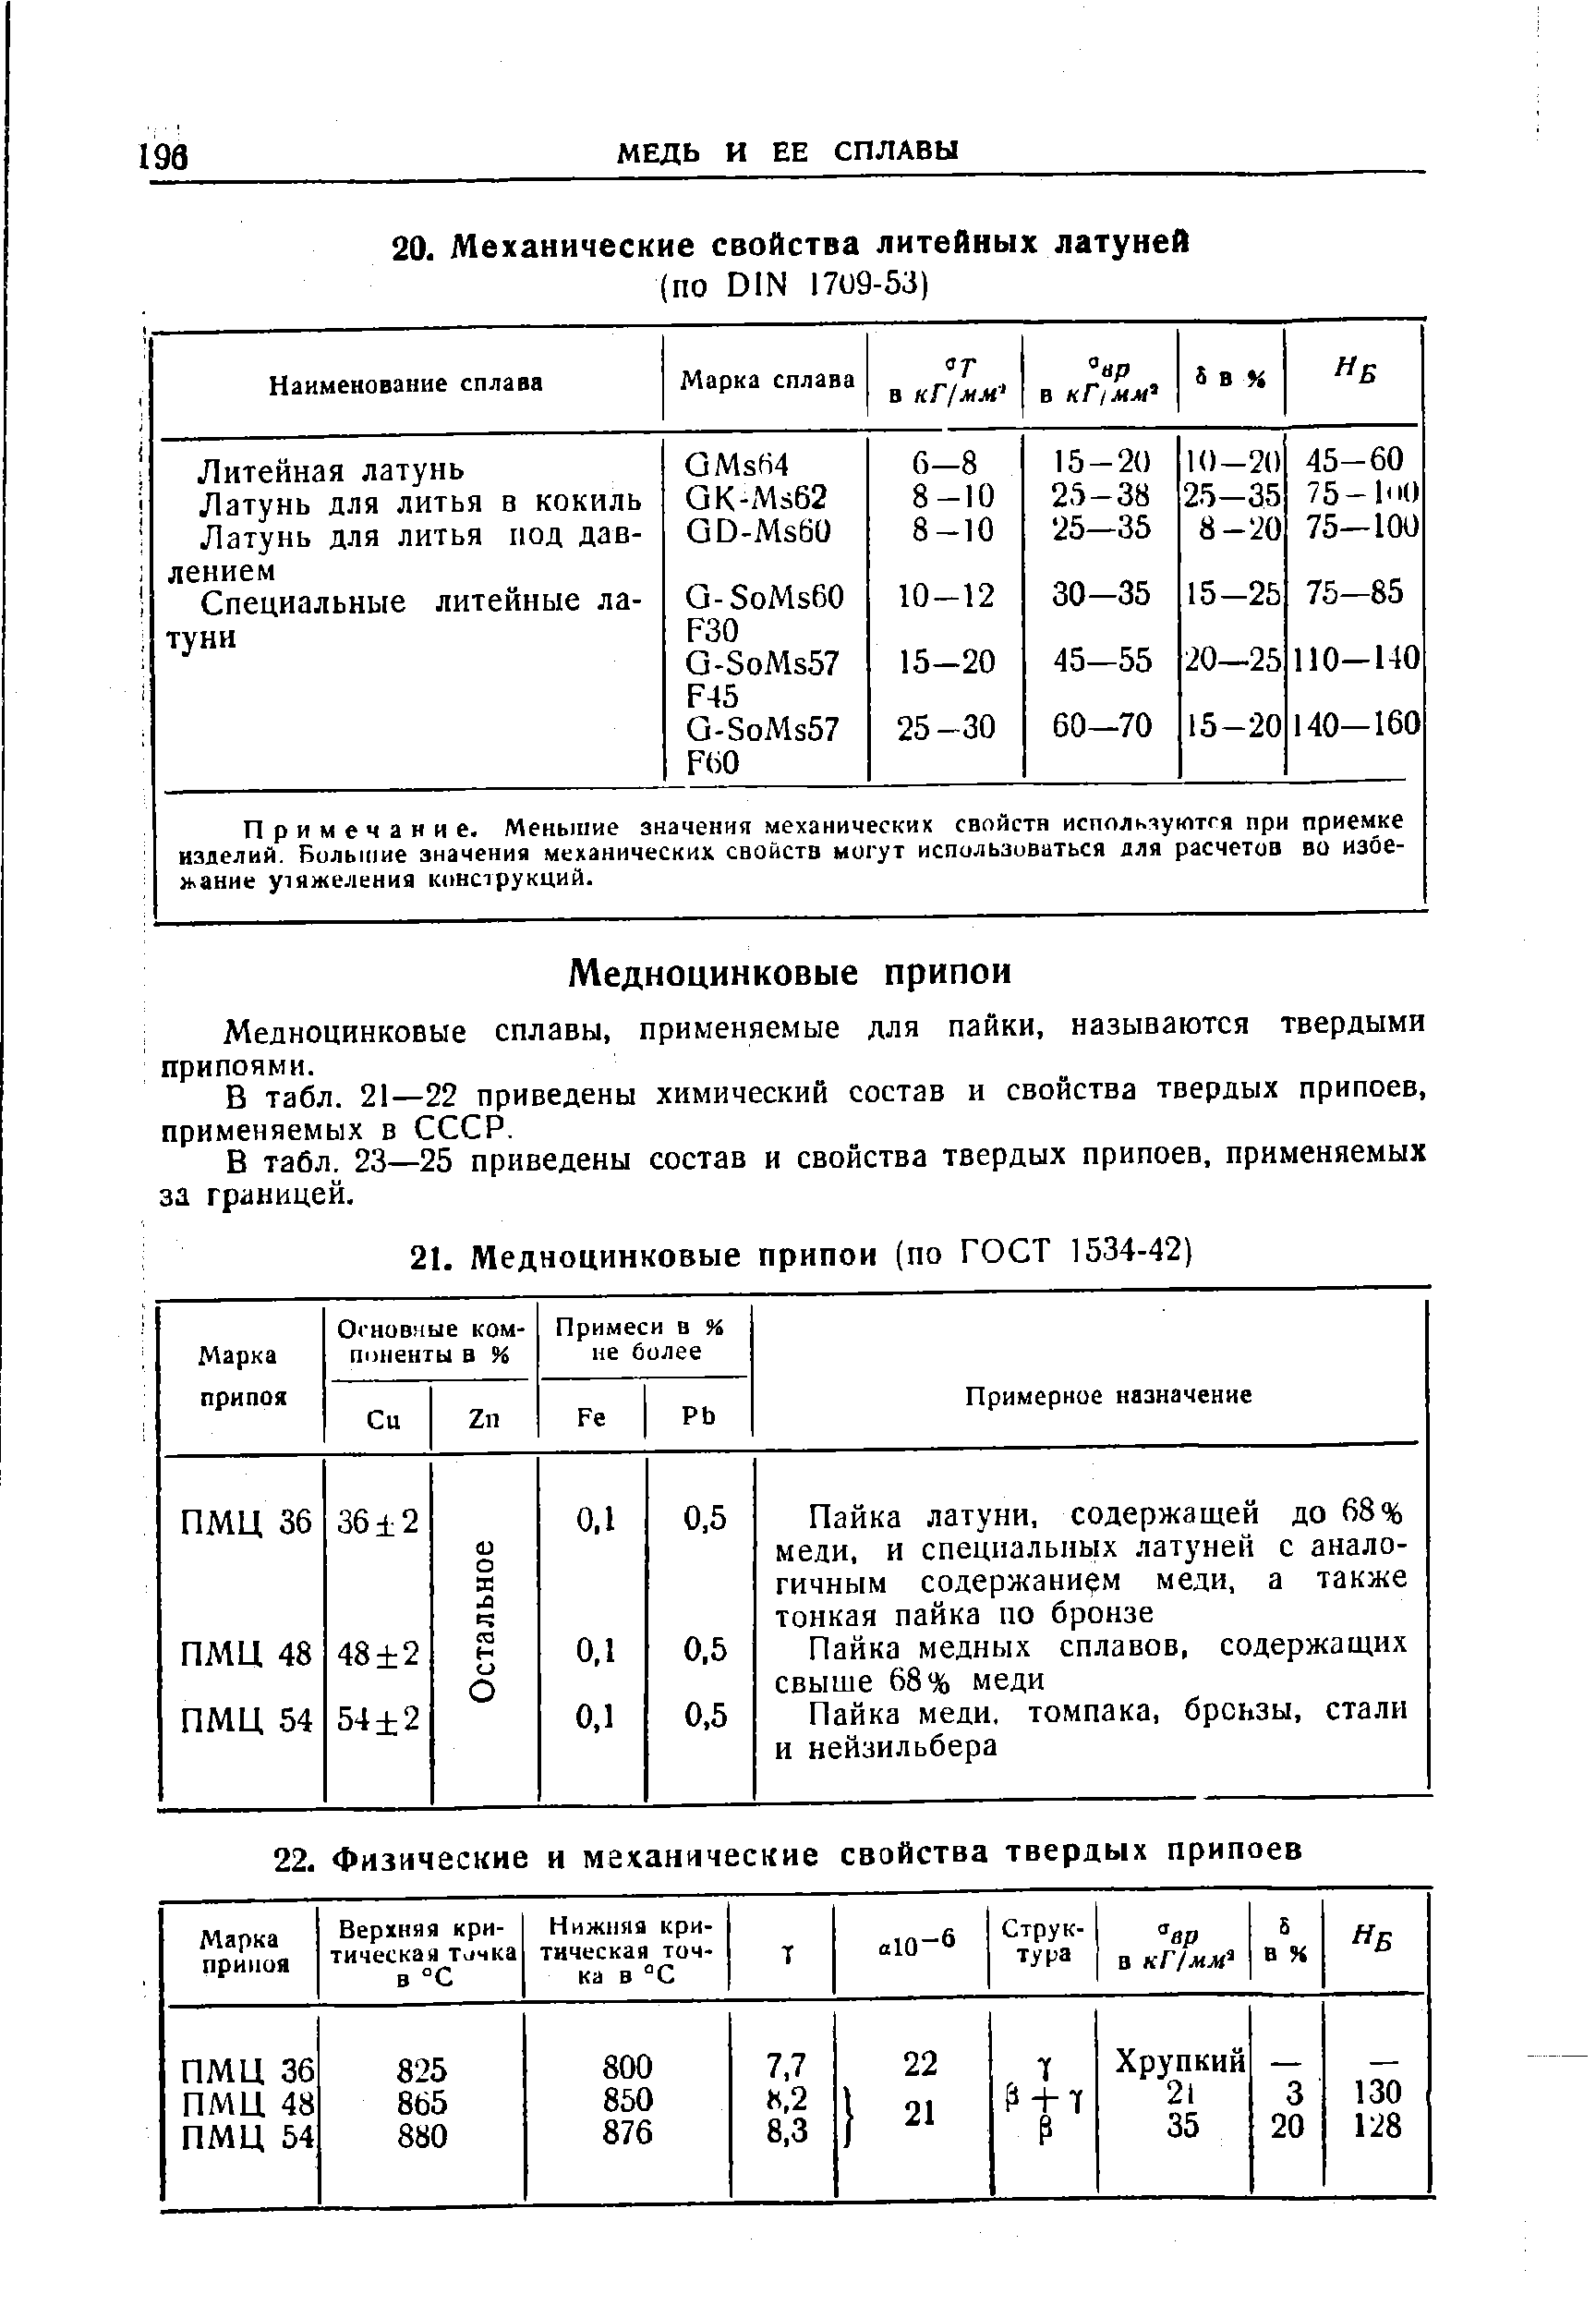 В табл. 21—22 приведены химический состав и свойства твердых припоев, применяемых в СССР.
